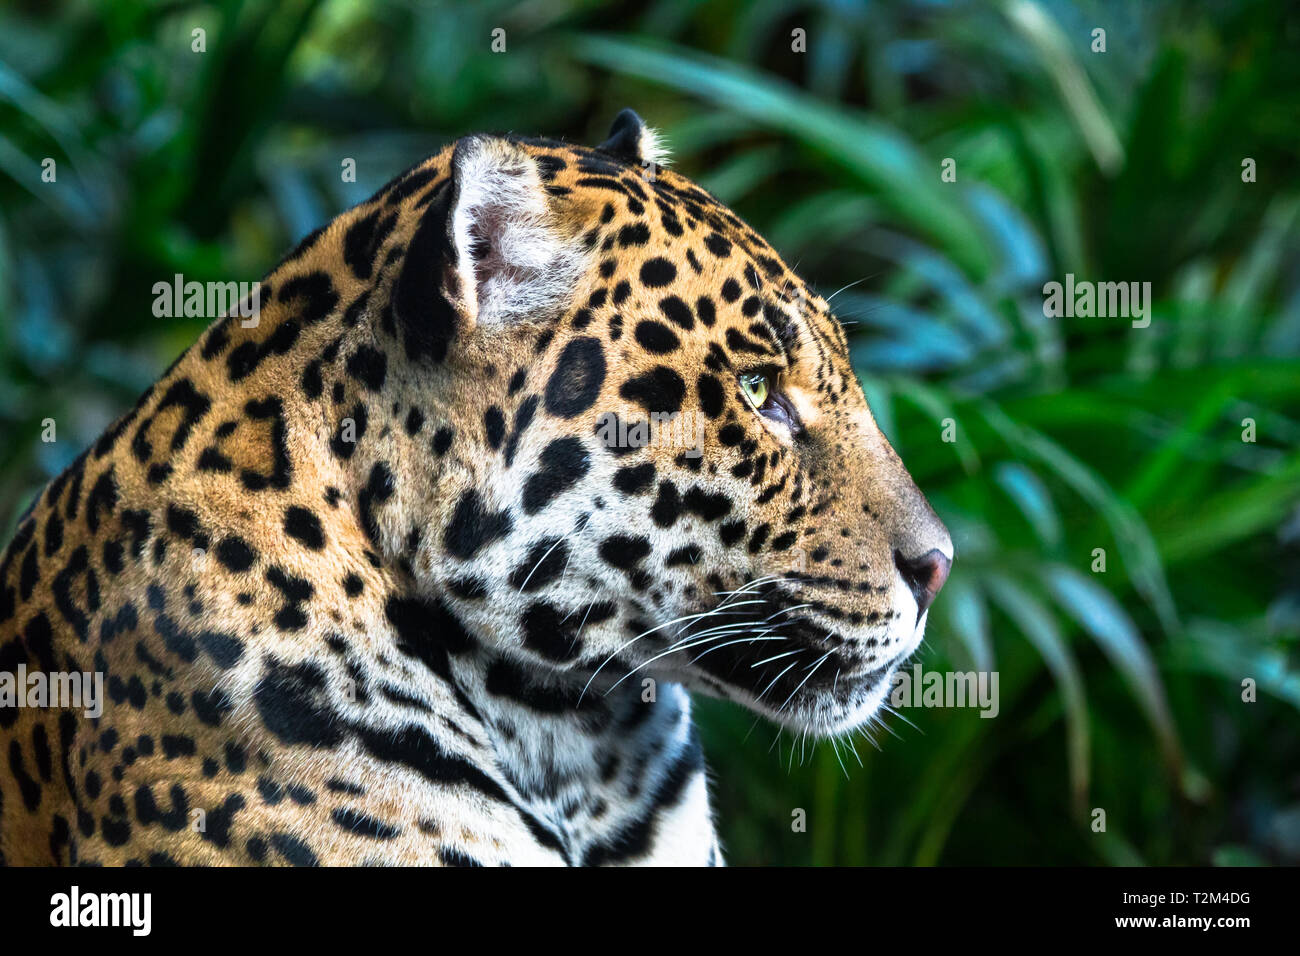 Ein erwachsener Jaguar (Panthera onca) Nahaufnahme unter Dschungel Vegetation. Stockfoto